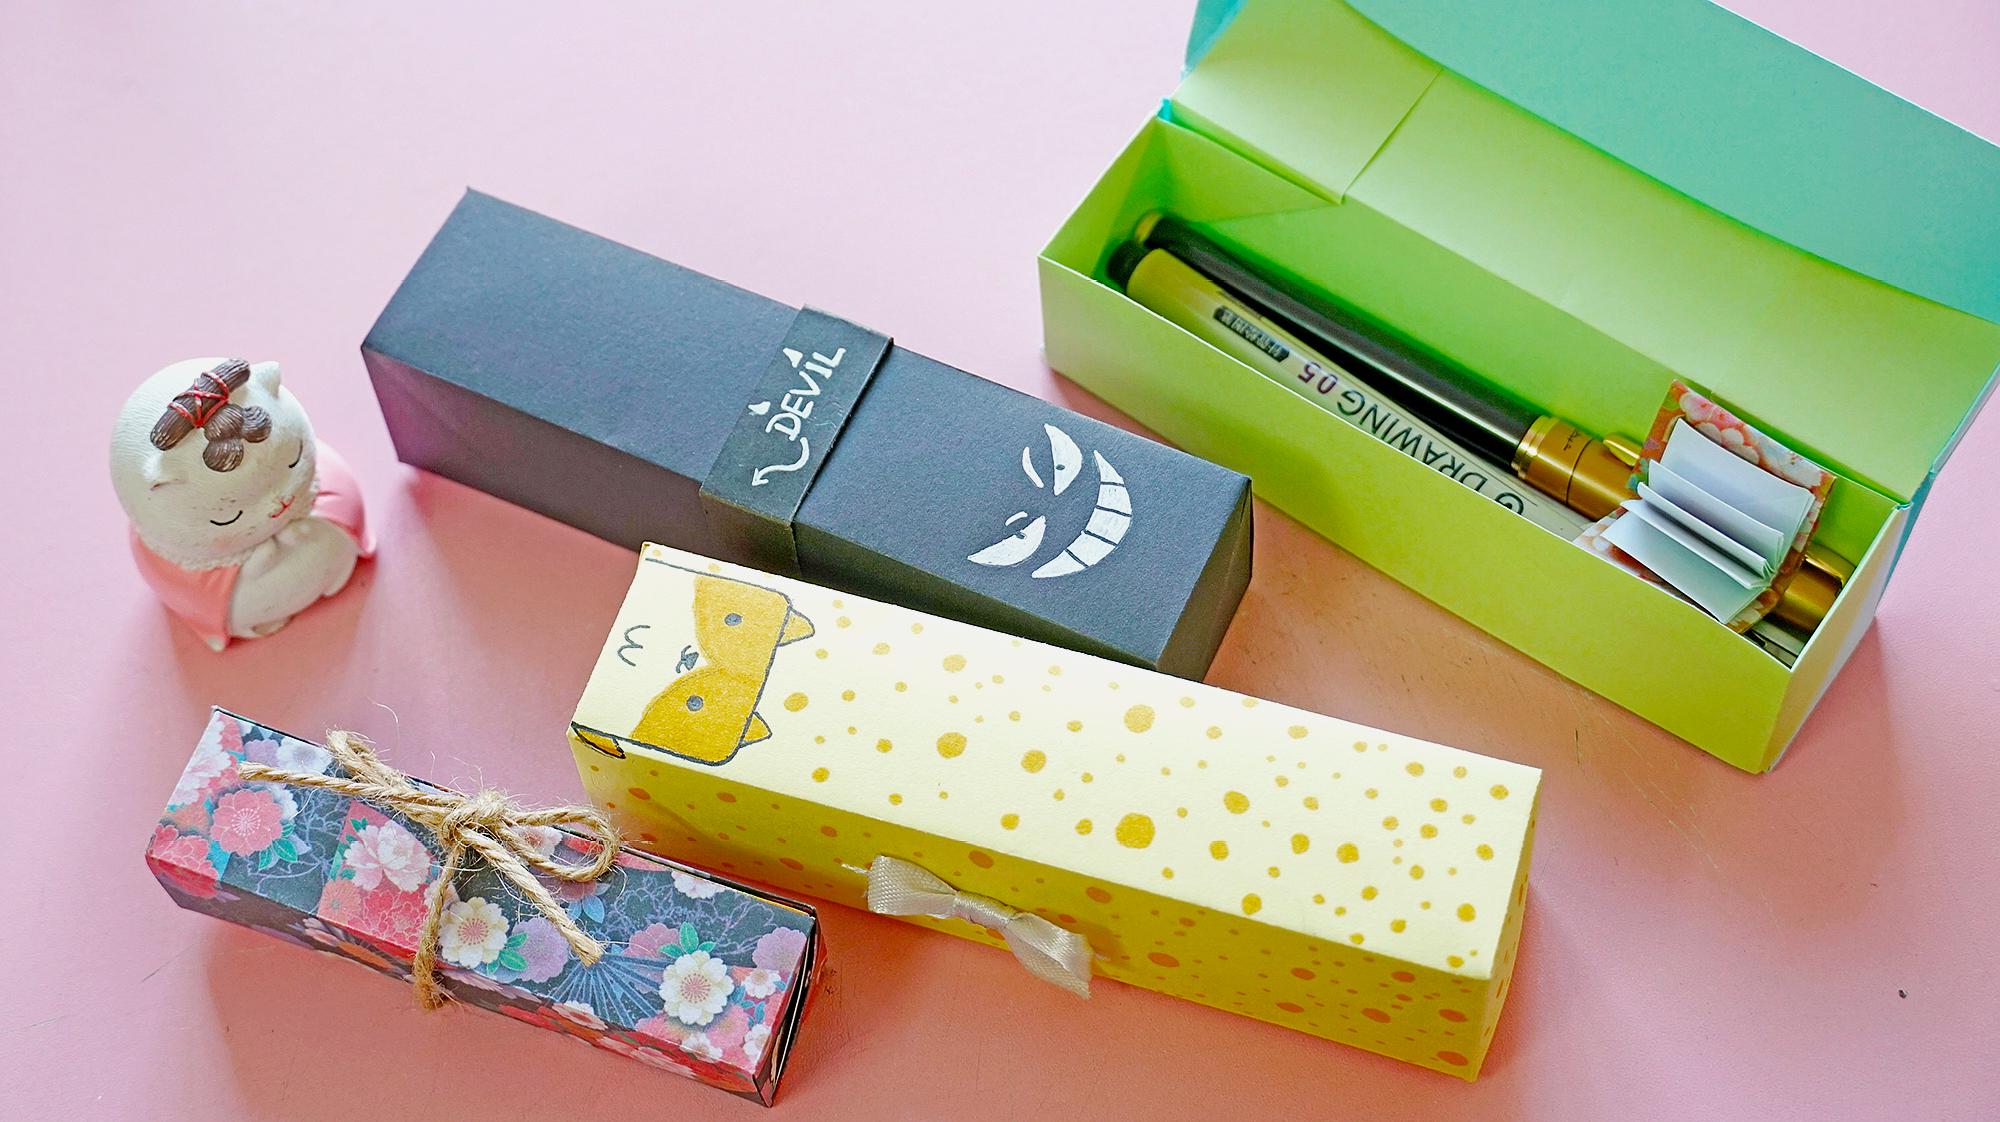 比较简单的一款折纸笔盒,材料只要两张纸,当作礼物盒也不错!